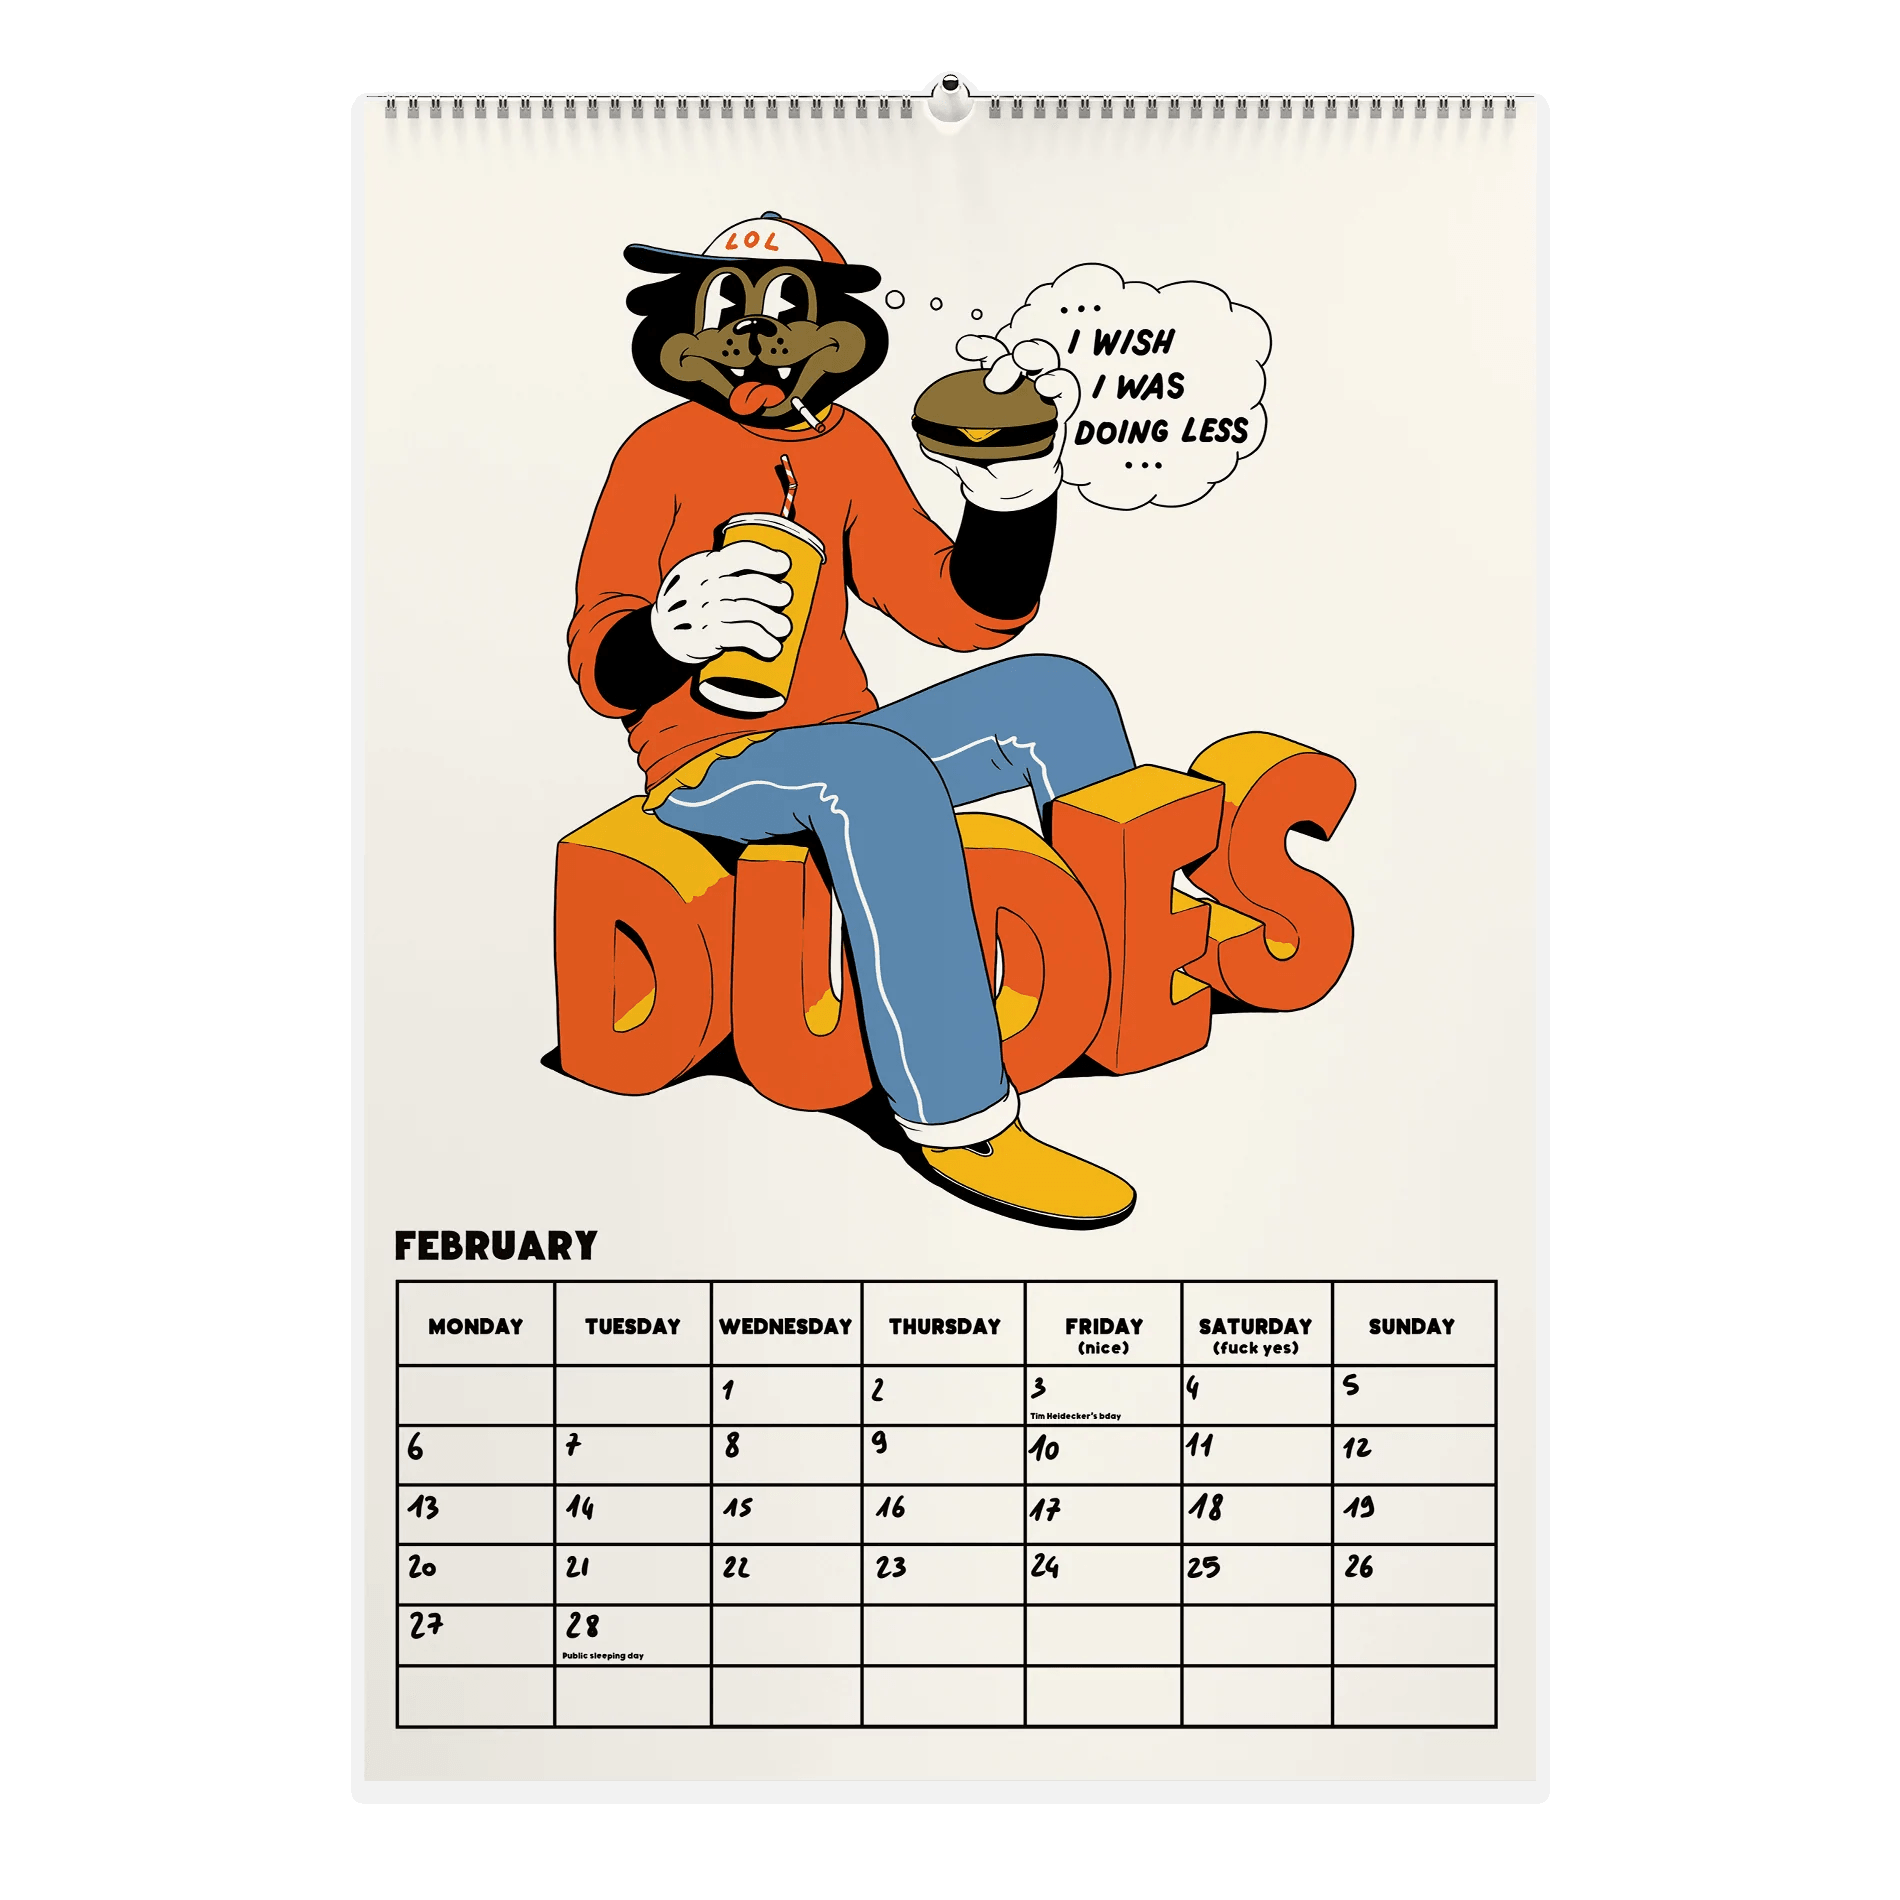 Calendario Dudes 2023 - ECRU